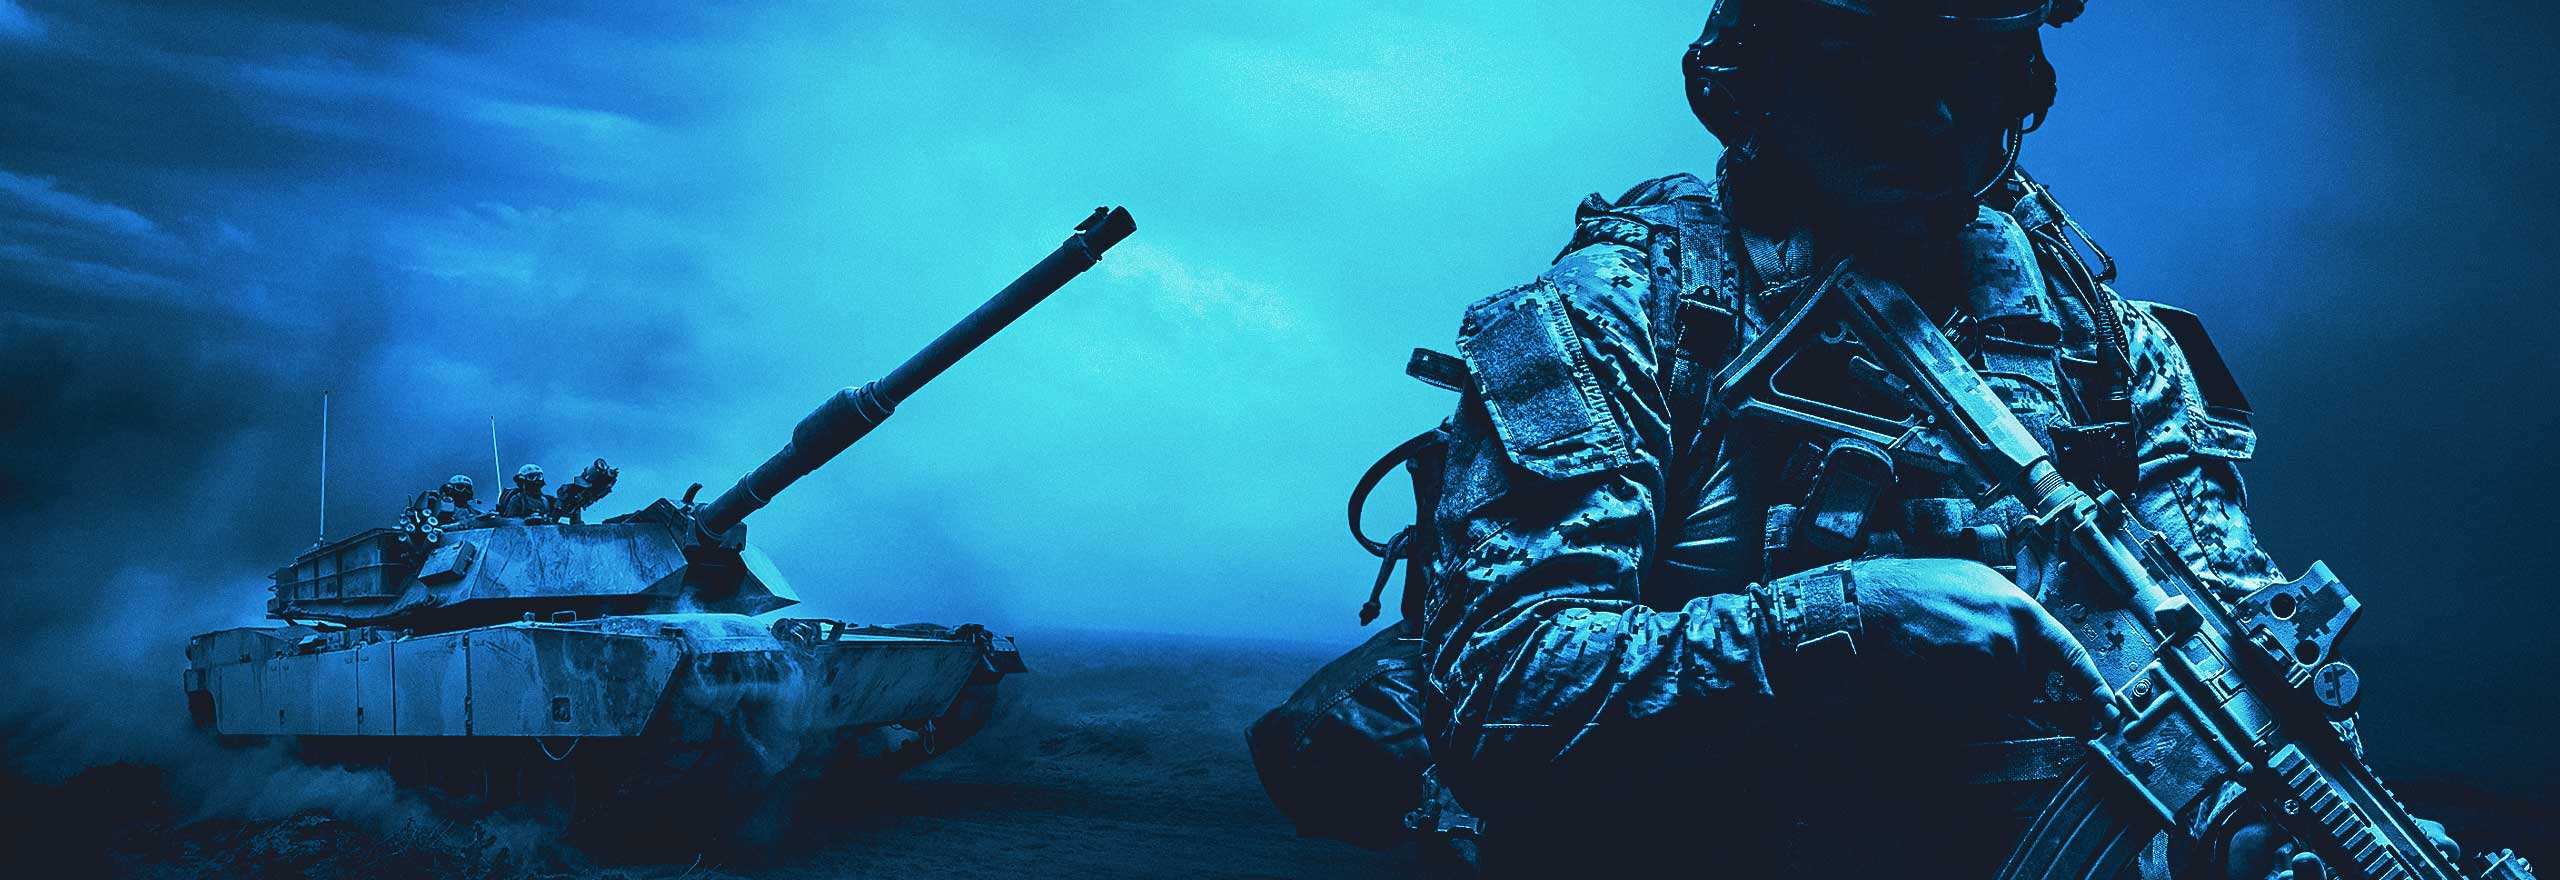 Image bleutée représentant un soldat, un réservoir et des hélicoptères.